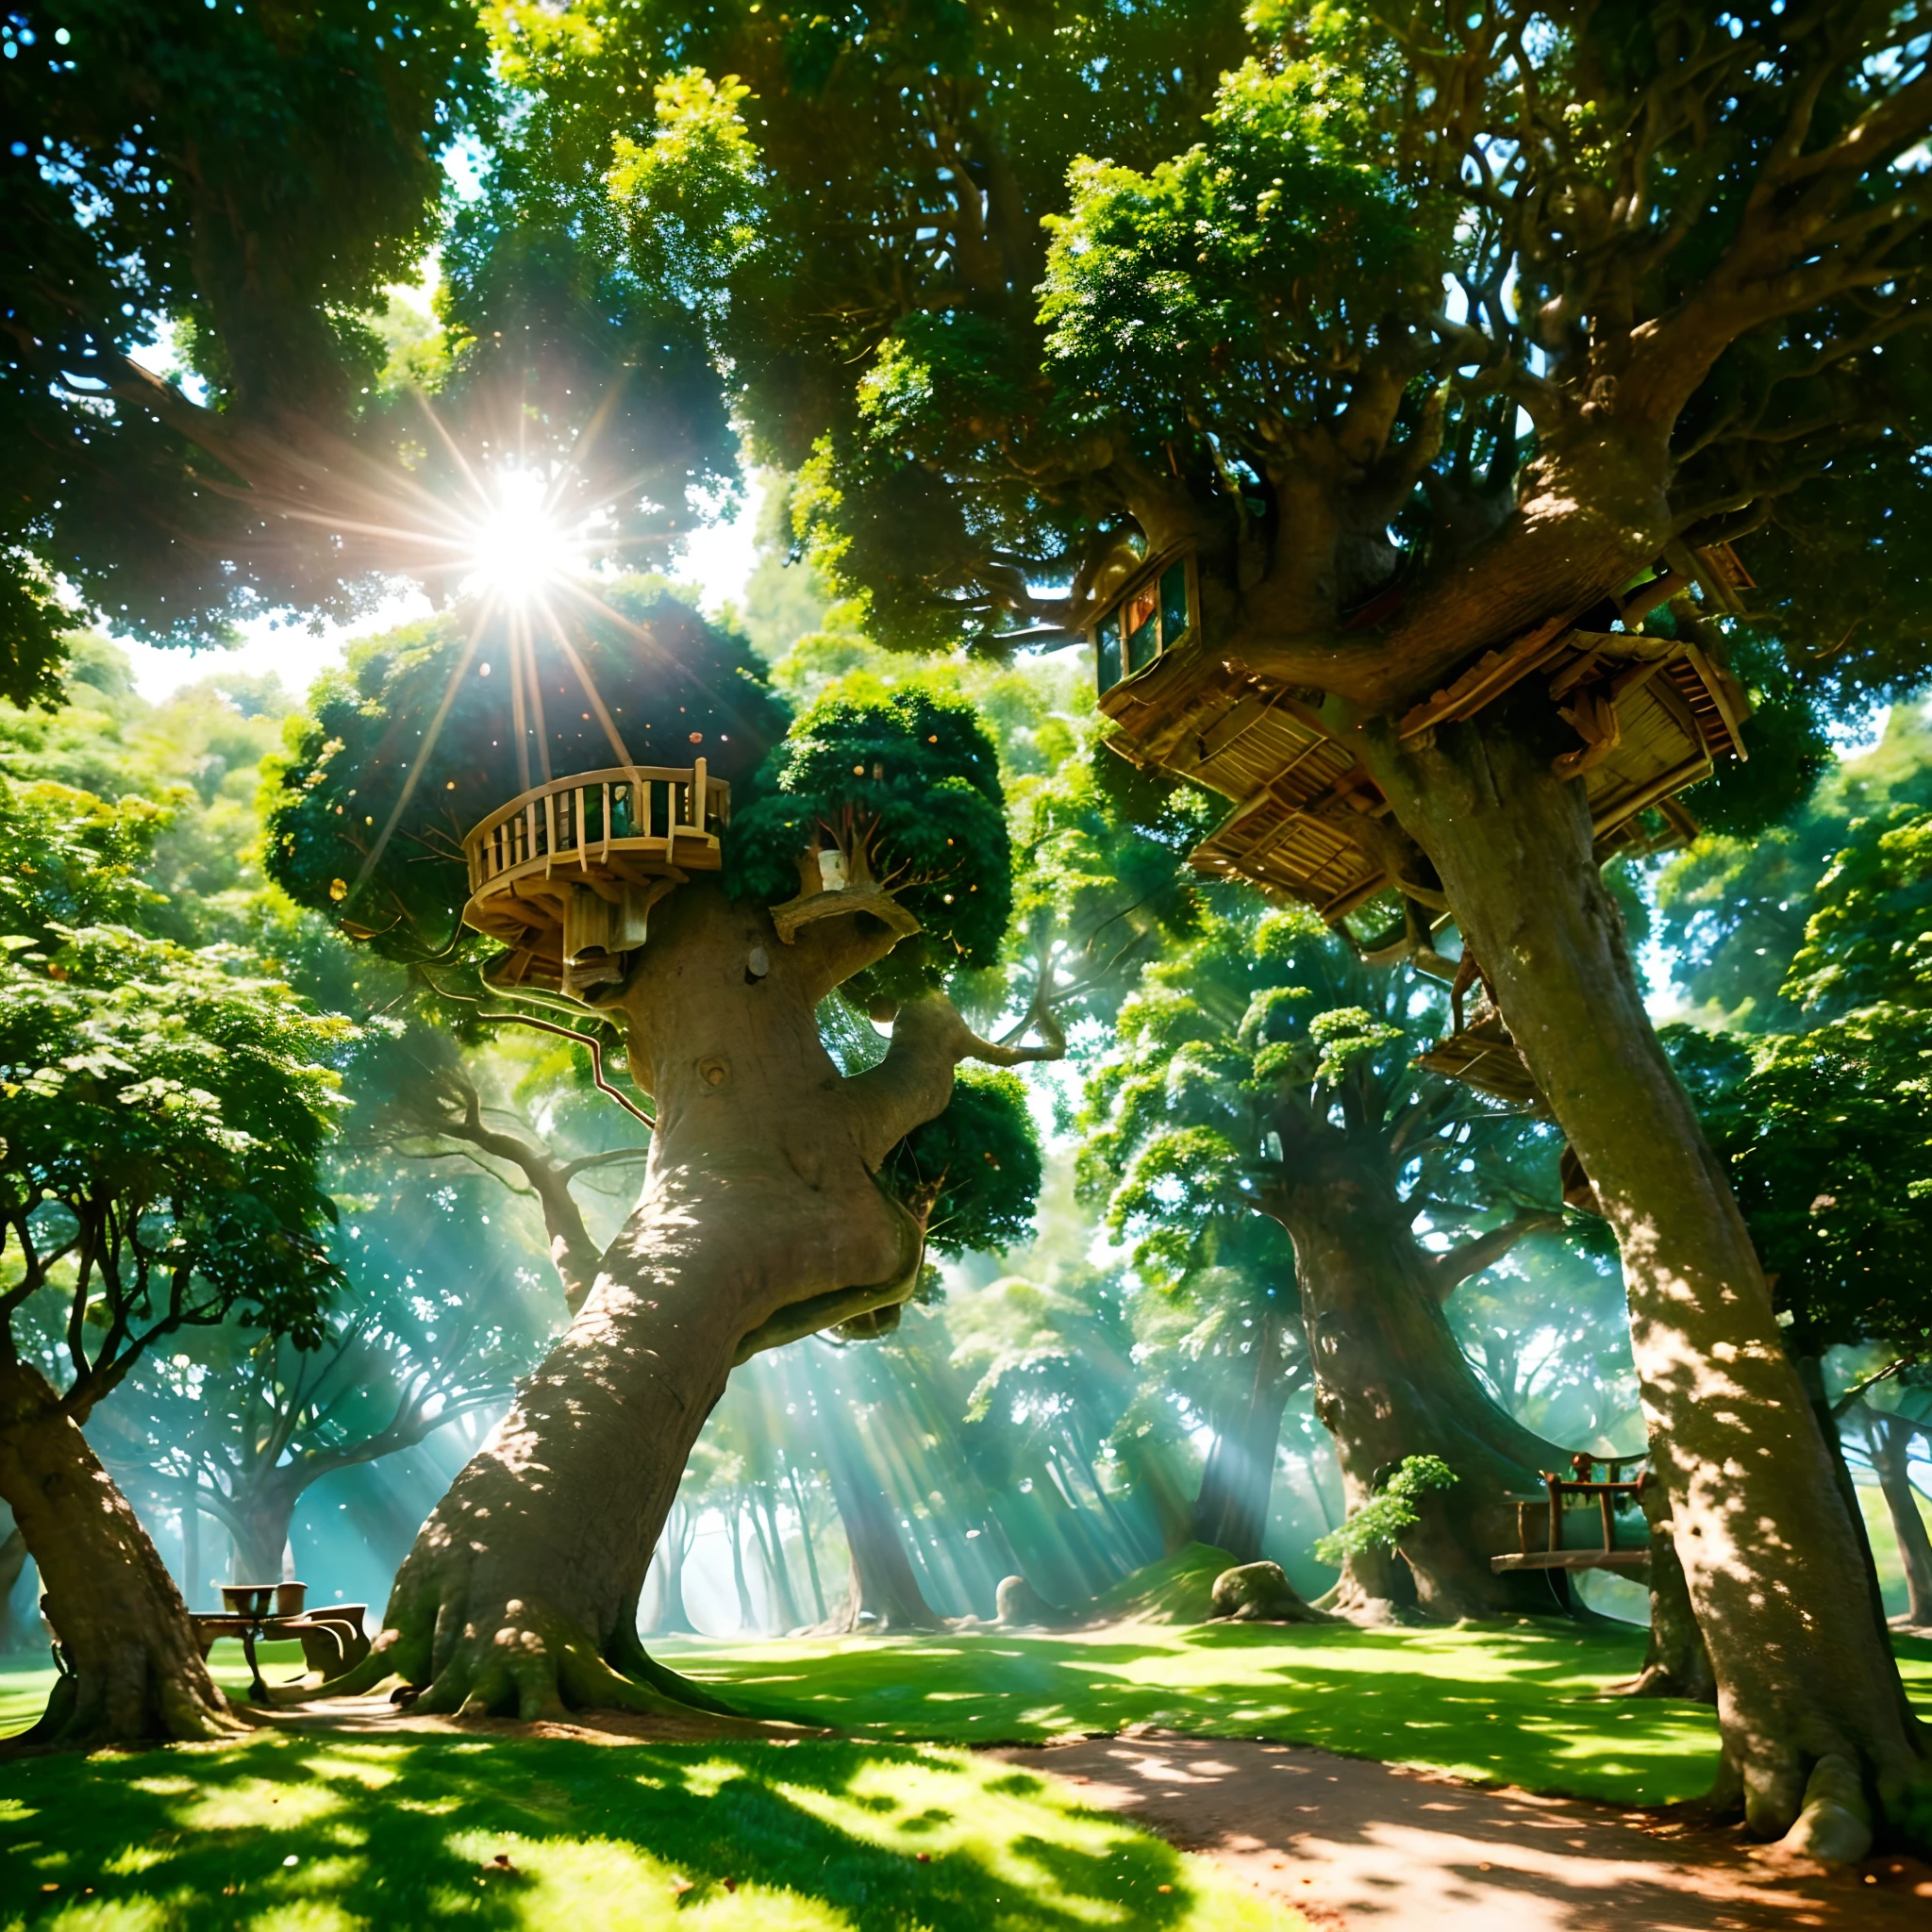 "Crea una imagen que represente una casa en el árbol bañada por el intenso resplandor del sol en un día soleado. Captura los detalles de las hojas de los árboles bailando con el viento y la luz dorada que ilumina el interior de la casa del árbol. Transmita a su imagen y semejanza la sensación de alegría y aventura de este entorno."